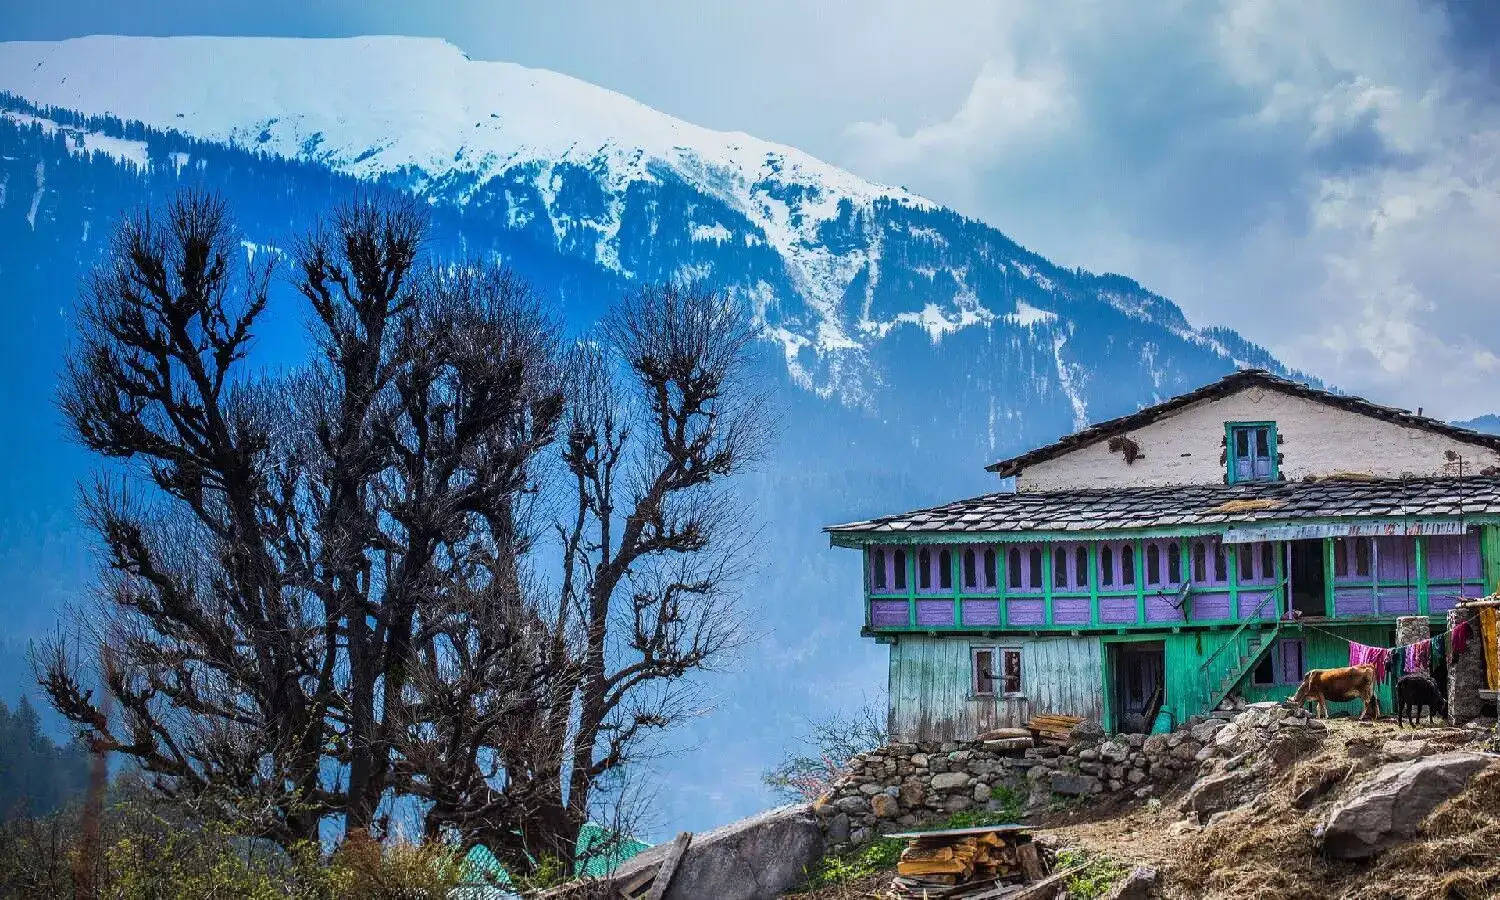 हिमाचल प्रदेश, जिसे भारत का मुकुट रत्न कहा जाता है, हिमालय की गोद में बसे अपनी लुभावनी सुंदरता के लिए दुनिया भर में प्रसिद्ध है। इसके कई रत्नों में से, हाटकोटी एक ऐसे राज्य के रूप में सामने आता है जो घरेलू और अंतर्राष्ट्रीय दोनों यात्रियों के दिलों पर कब्जा कर लेता है। प्रतिदिन, बहुत से उत्साही लोग हिमाचल प्रदेश की मनमोहक घाटियों, विशेष रूप से हाटकोटी की यात्रा पर निकलते हैं।